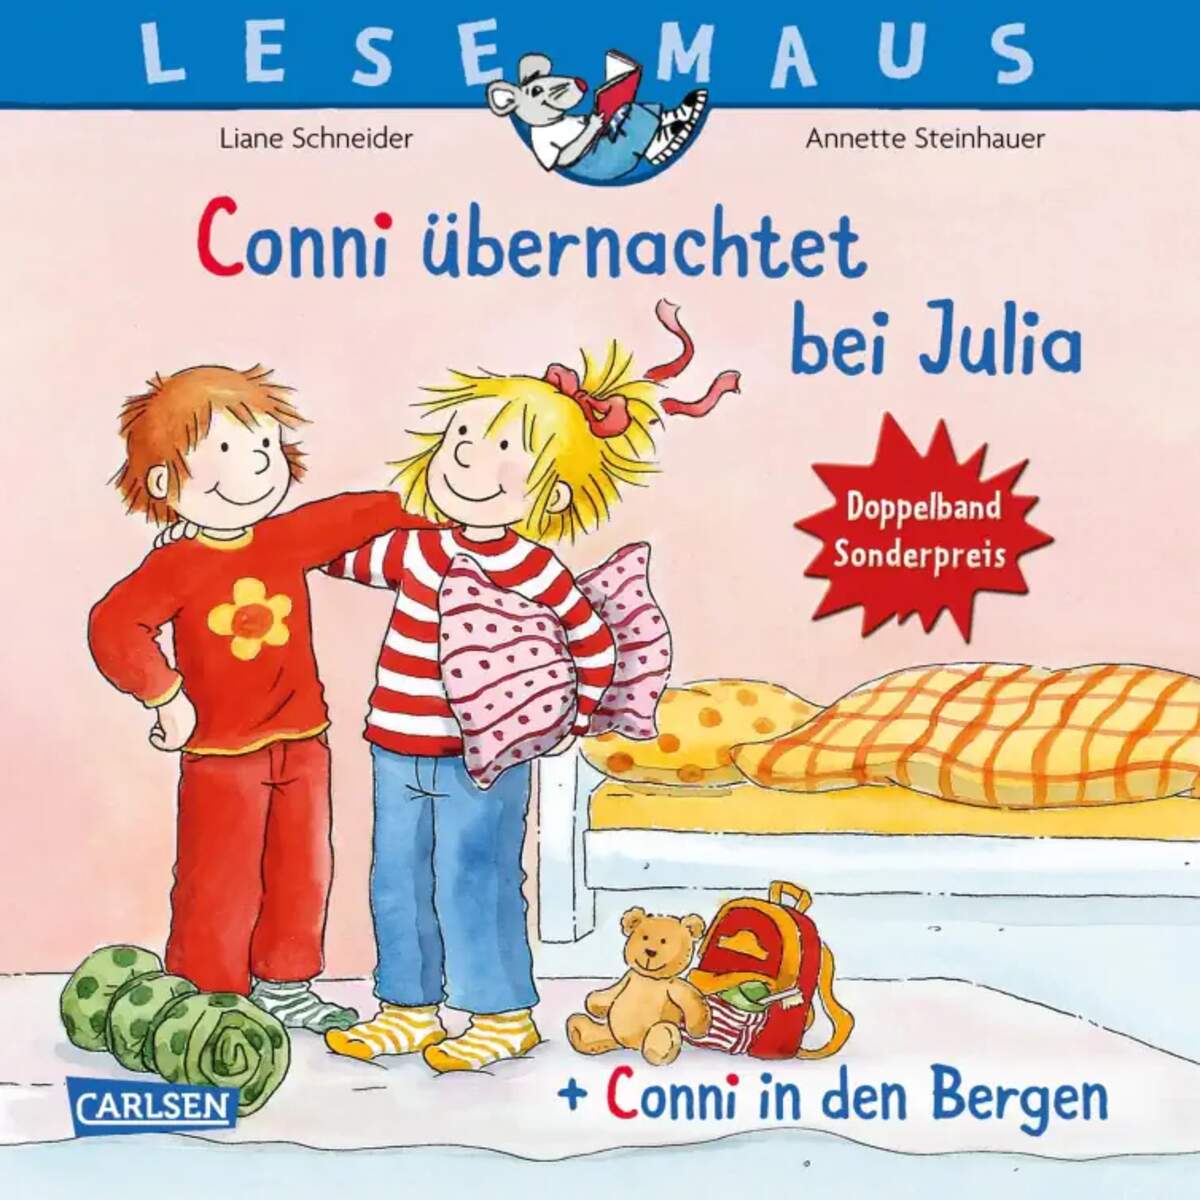 Carlsen Verlag LESEMAUS 207: "Conni übernachtet bei Julia" + "Conni in den Bergen" Doppelband